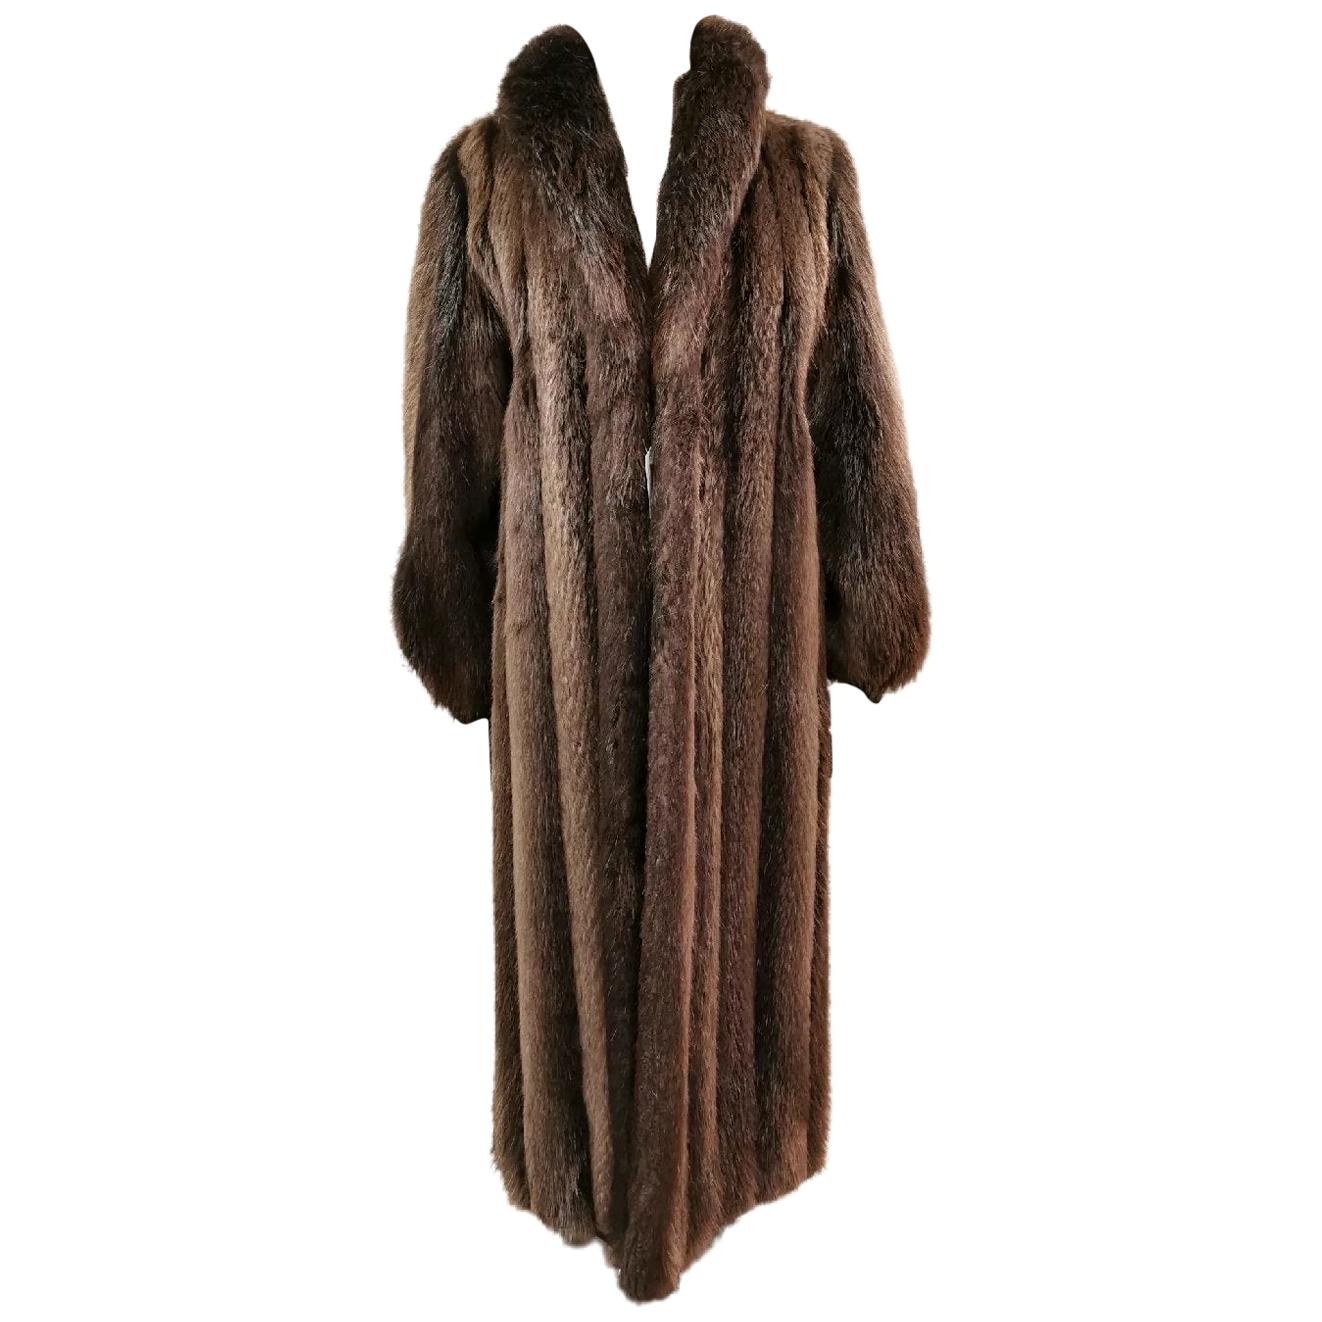 Brand new Birger christensen beaver fur coat size 14 For Sale